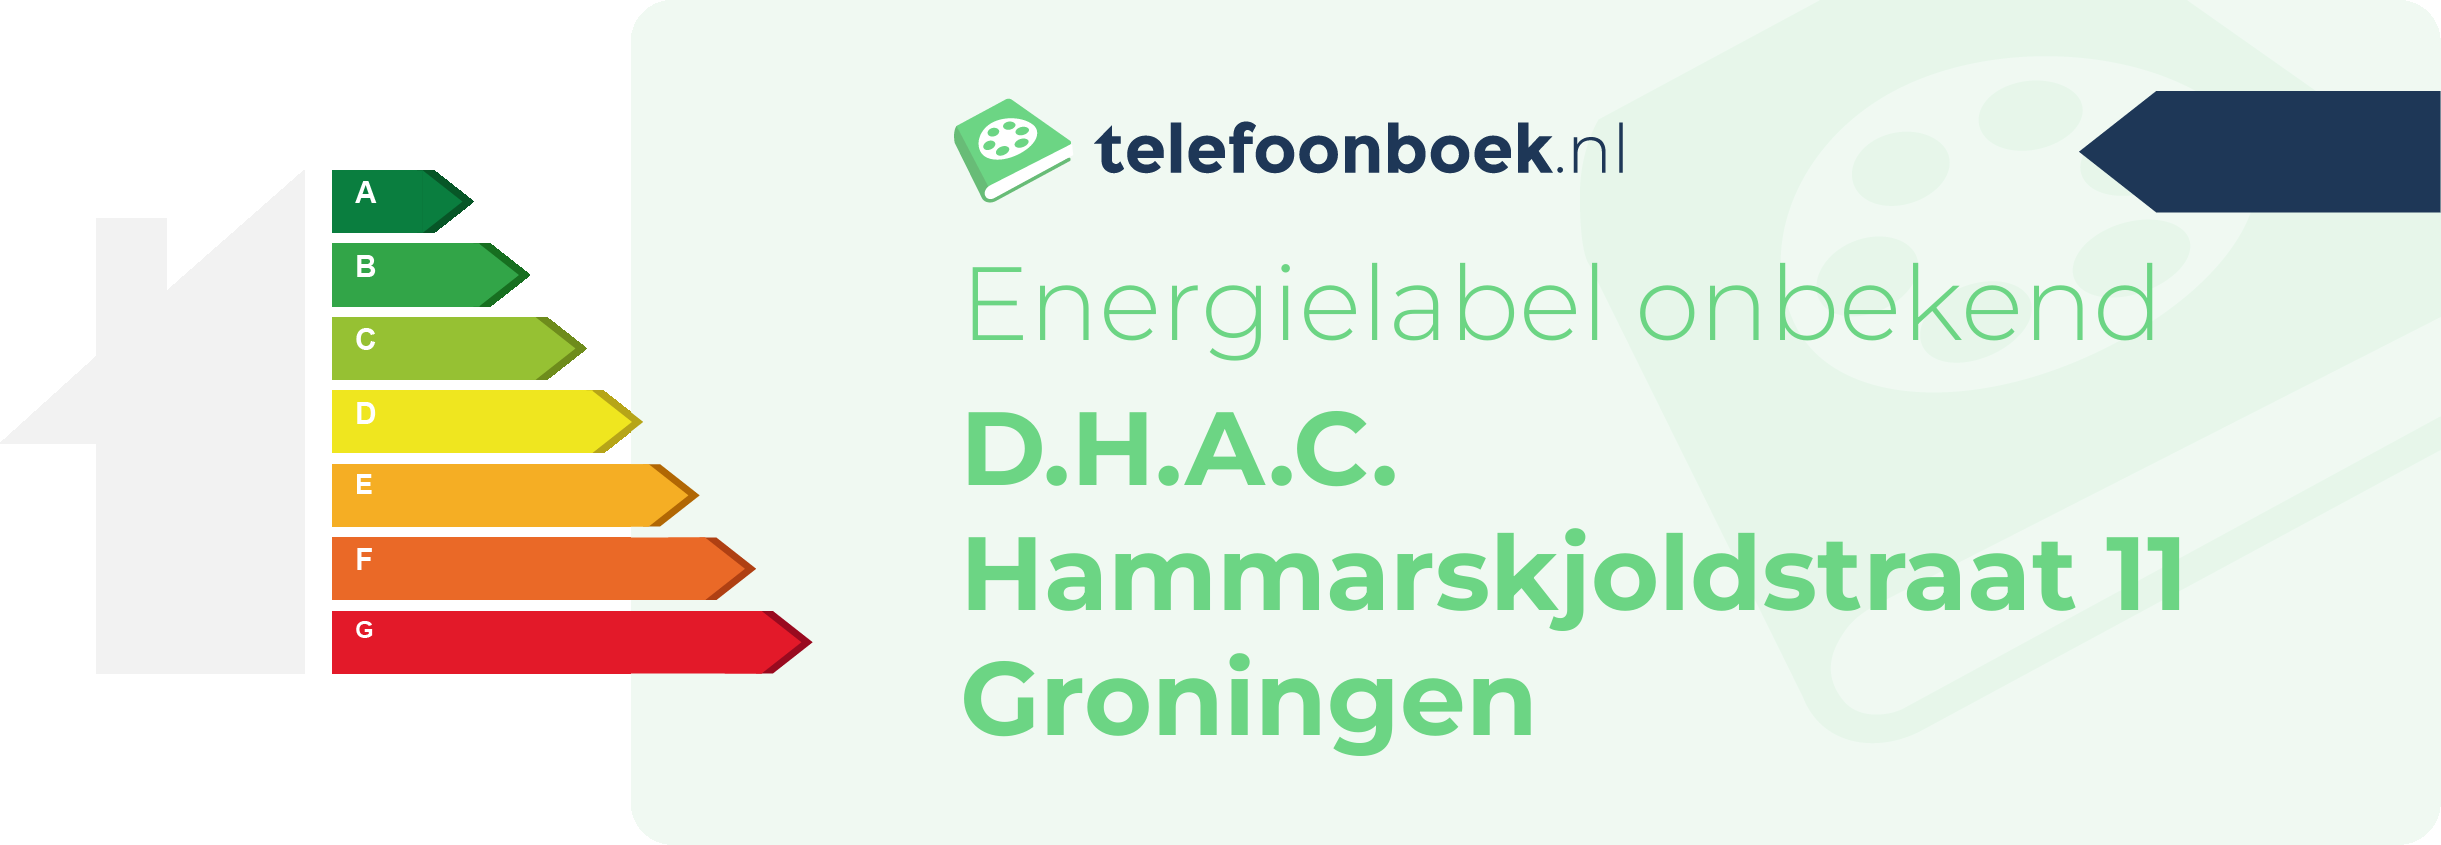 Energielabel D.H.A.C. Hammarskjoldstraat 11 Groningen